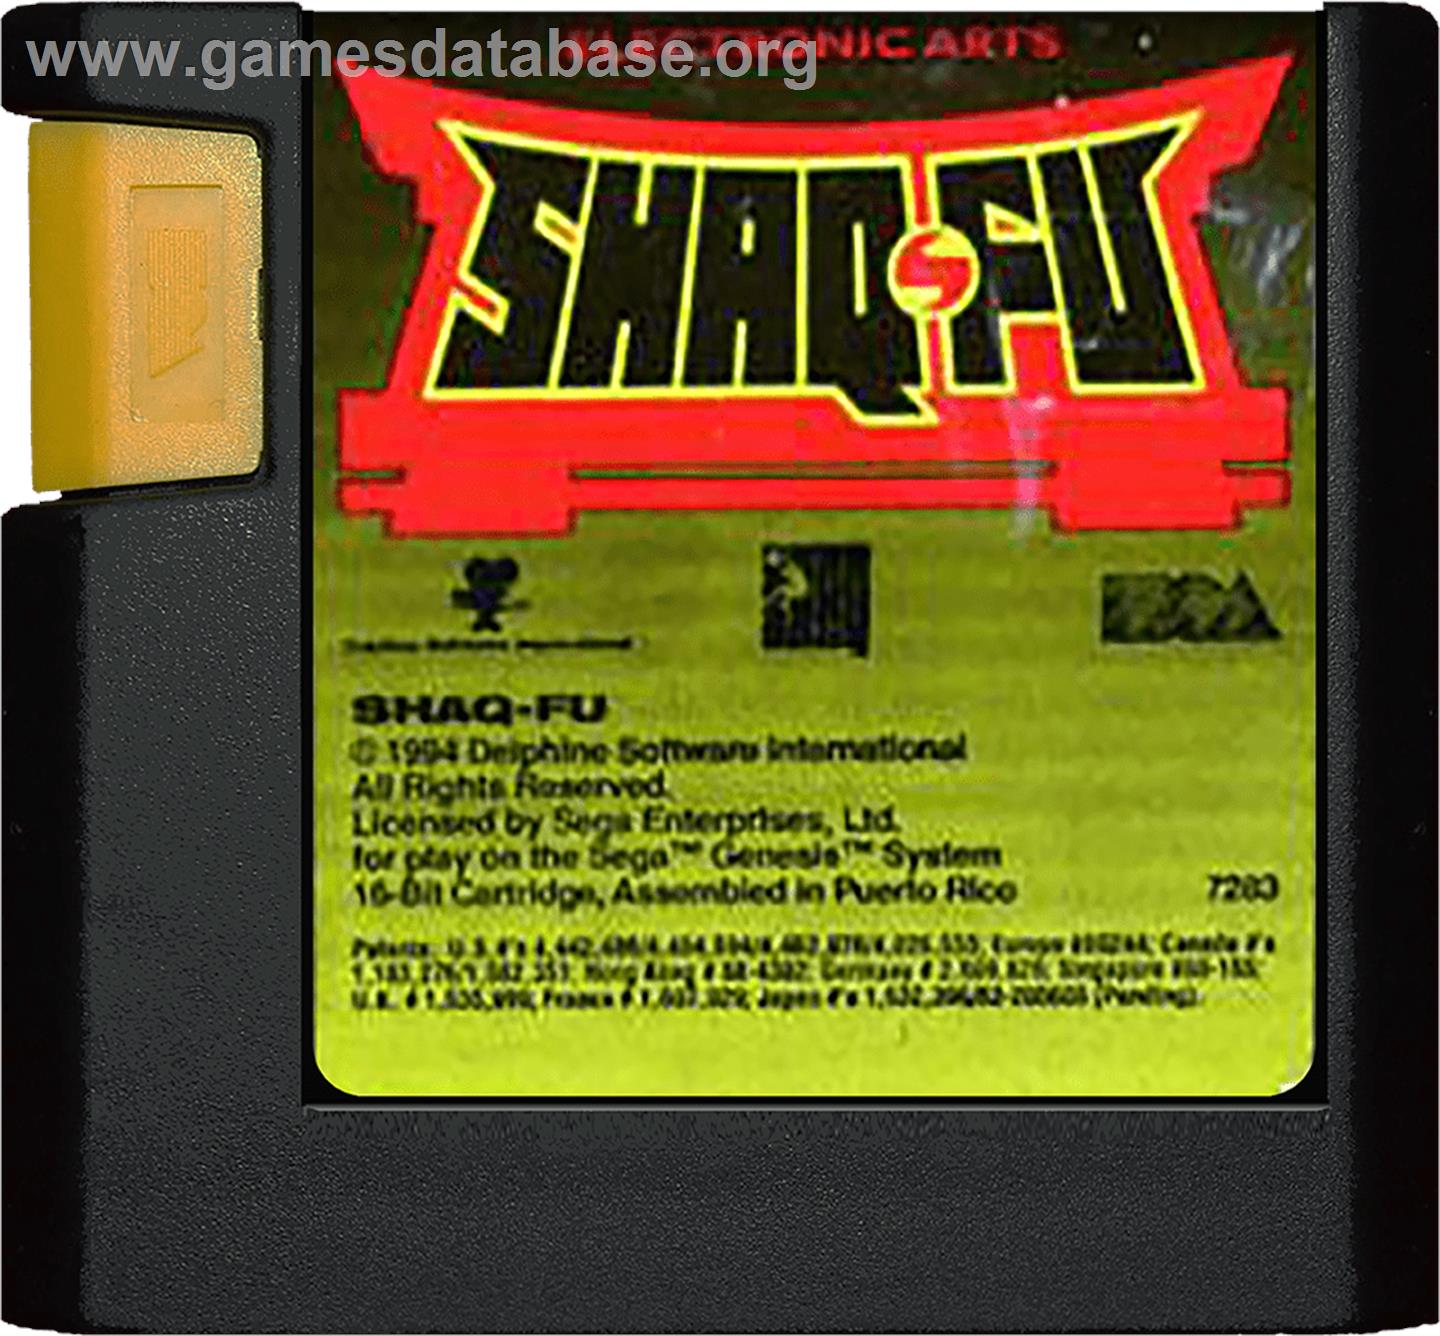 Shaq Fu - Sega Genesis - Artwork - Cartridge